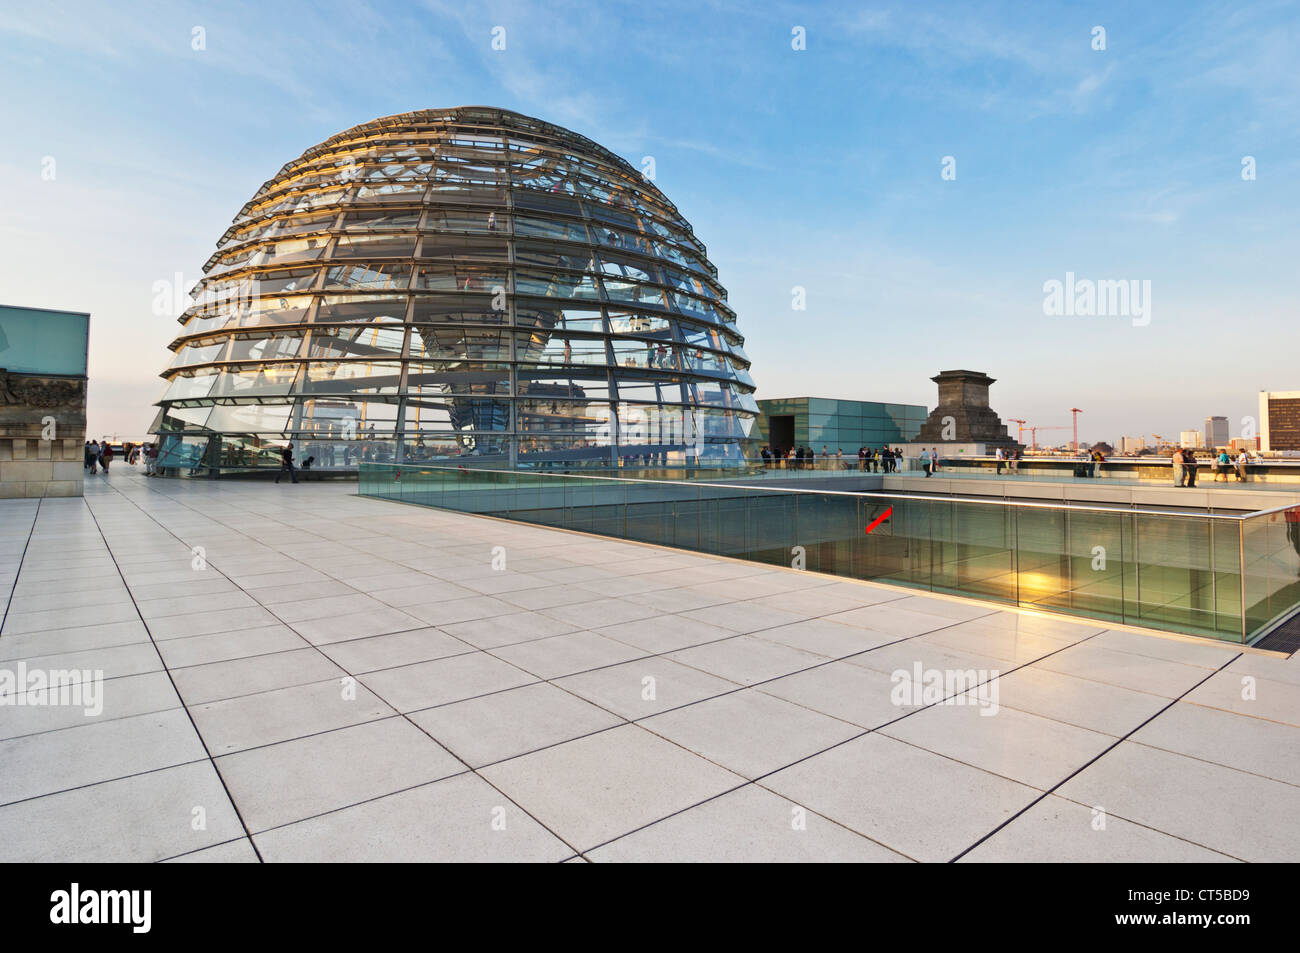 Le dôme de verre conçu par Sir Norman Foster au-dessus de la salle plénière, bâtiment du Reichstag, le centre-ville de Berlin Allemagne Europe de l'UE Banque D'Images